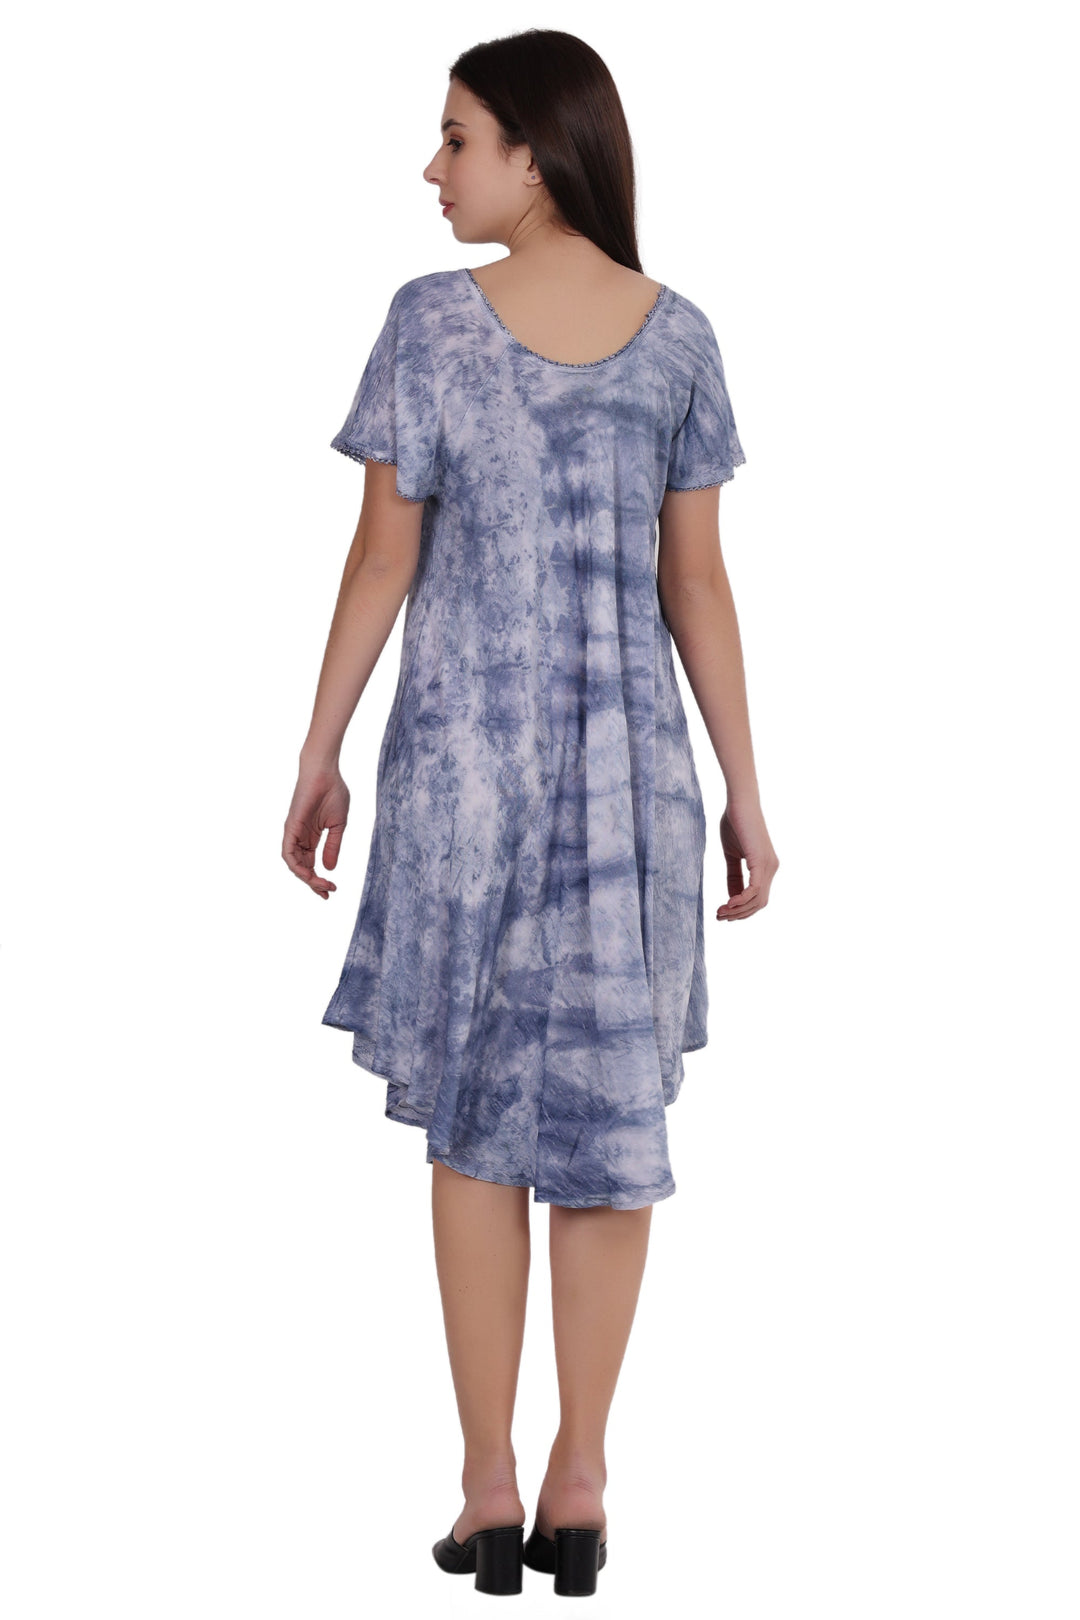 Cap Sleeve Tie Dye Dress 482165-SLVD